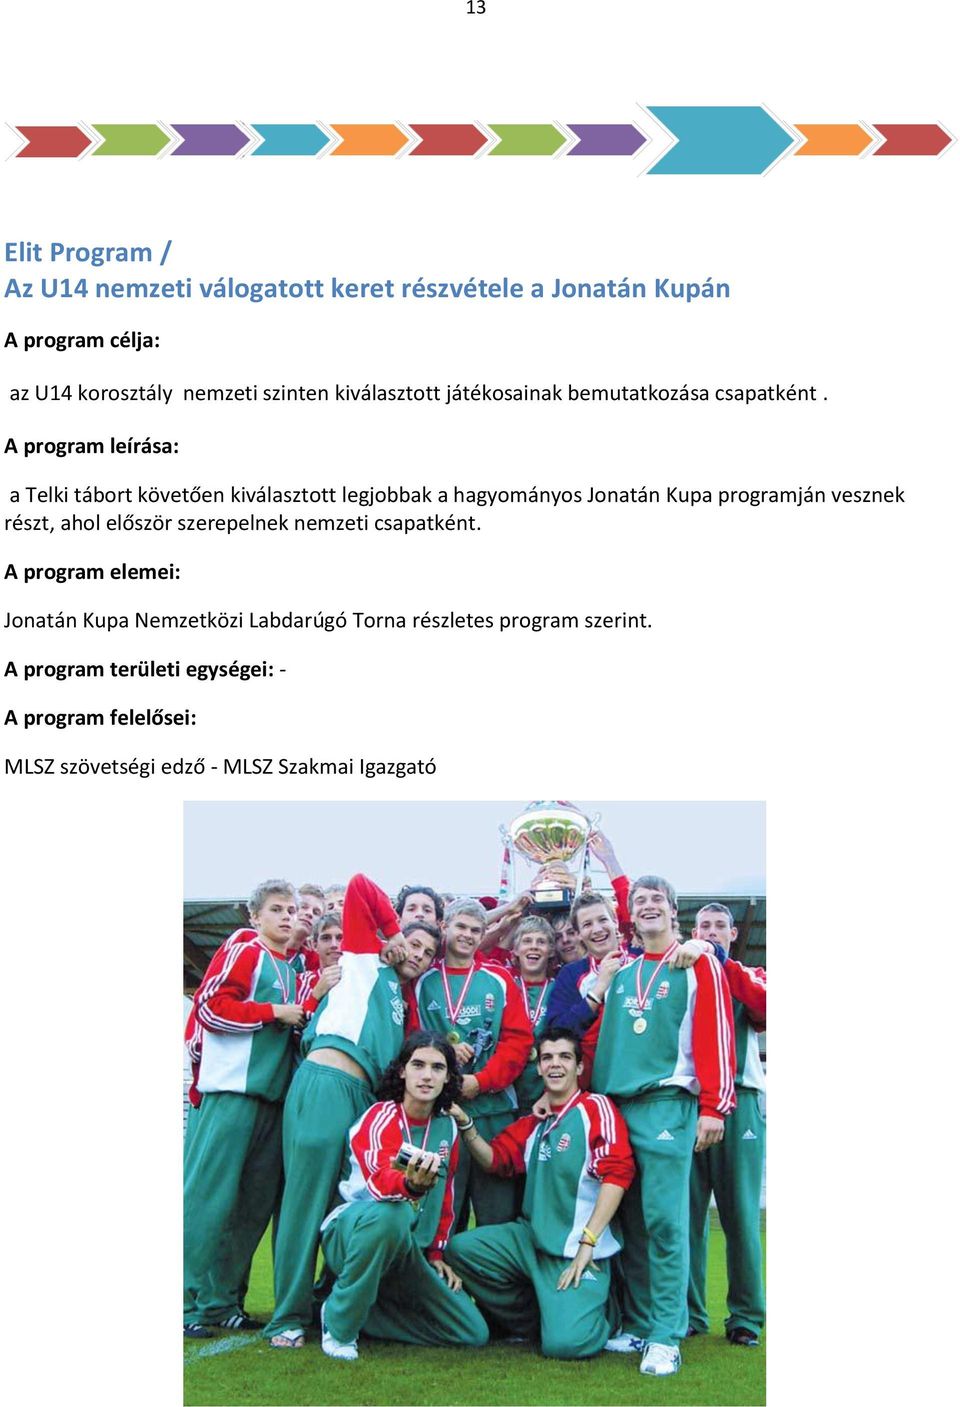 A program leírása: a Telki tábort követően kiválasztott legjobbak a hagyományos Jonatán Kupa programján vesznek részt,